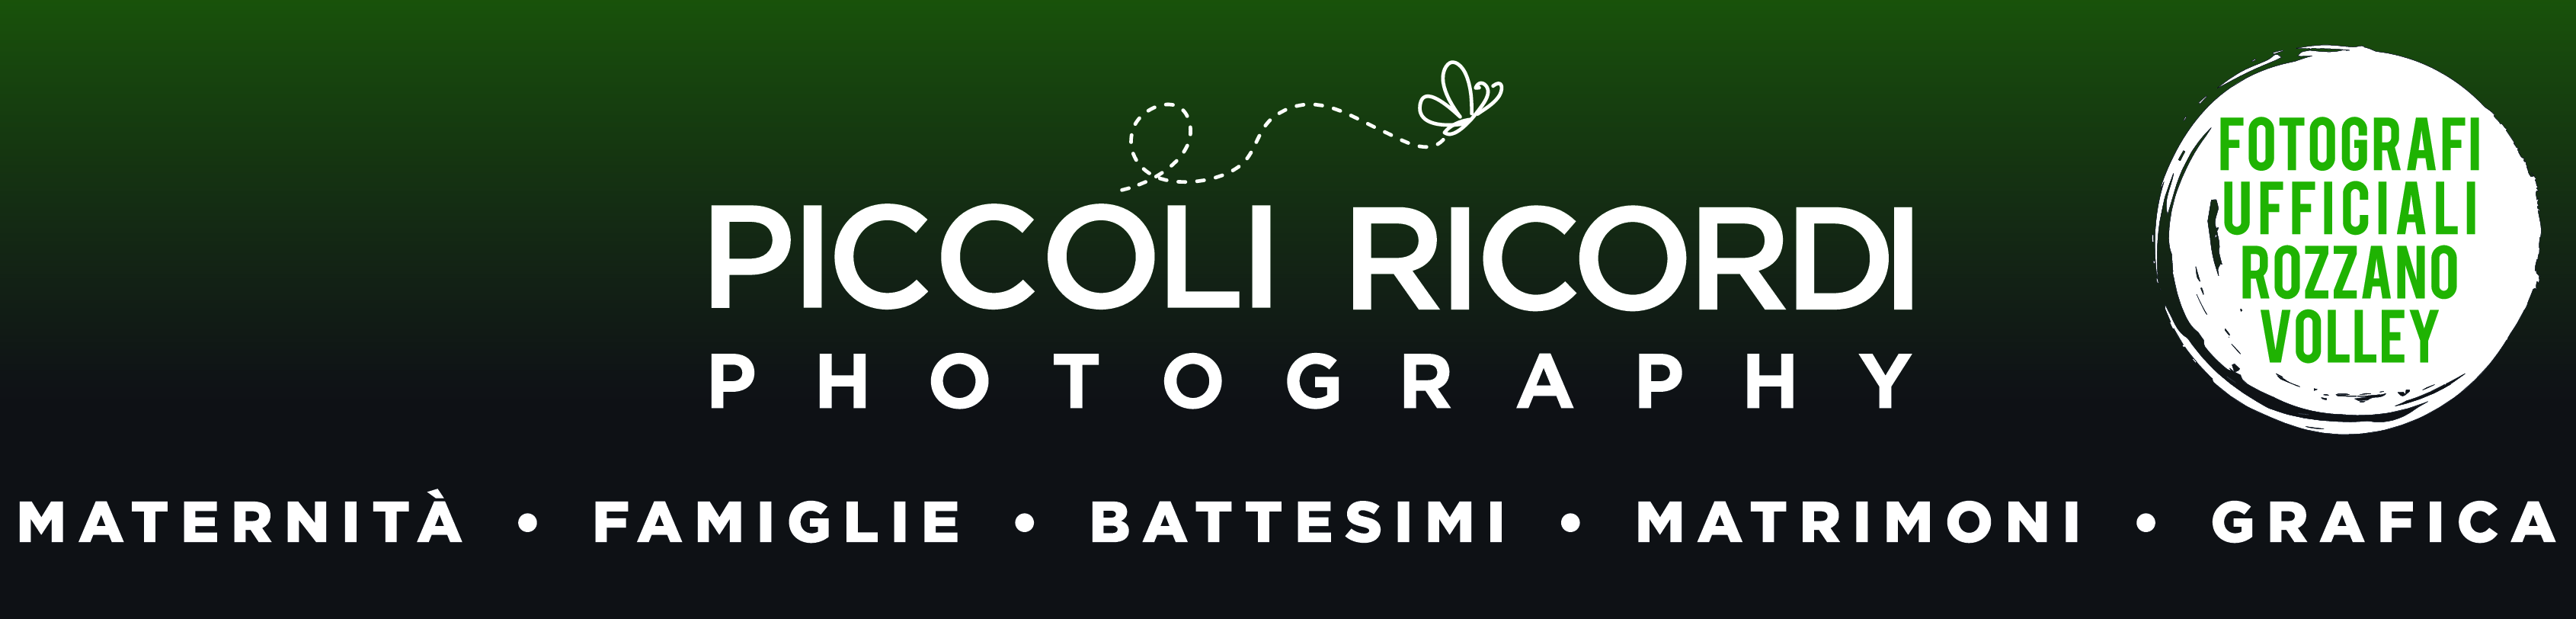 Banner-Piccoli-Ricordi sito